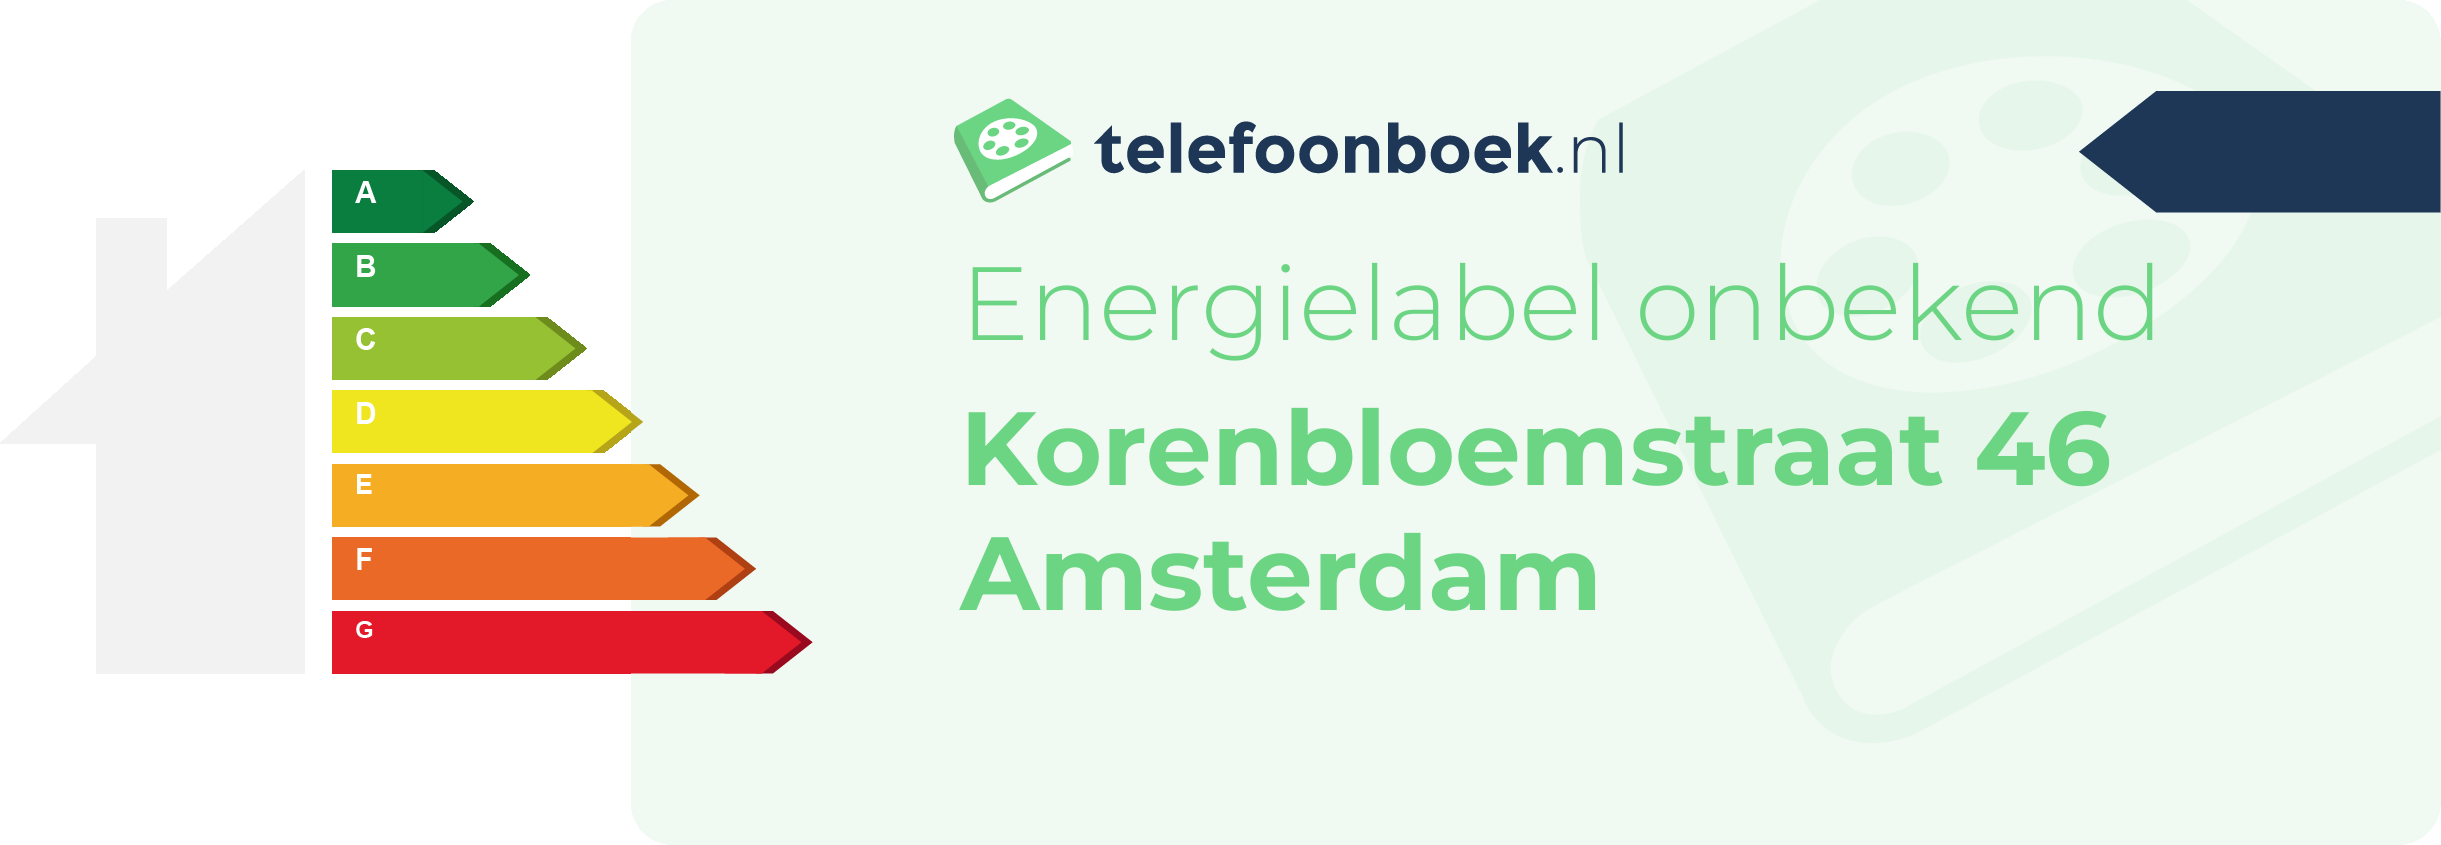 Energielabel Korenbloemstraat 46 Amsterdam